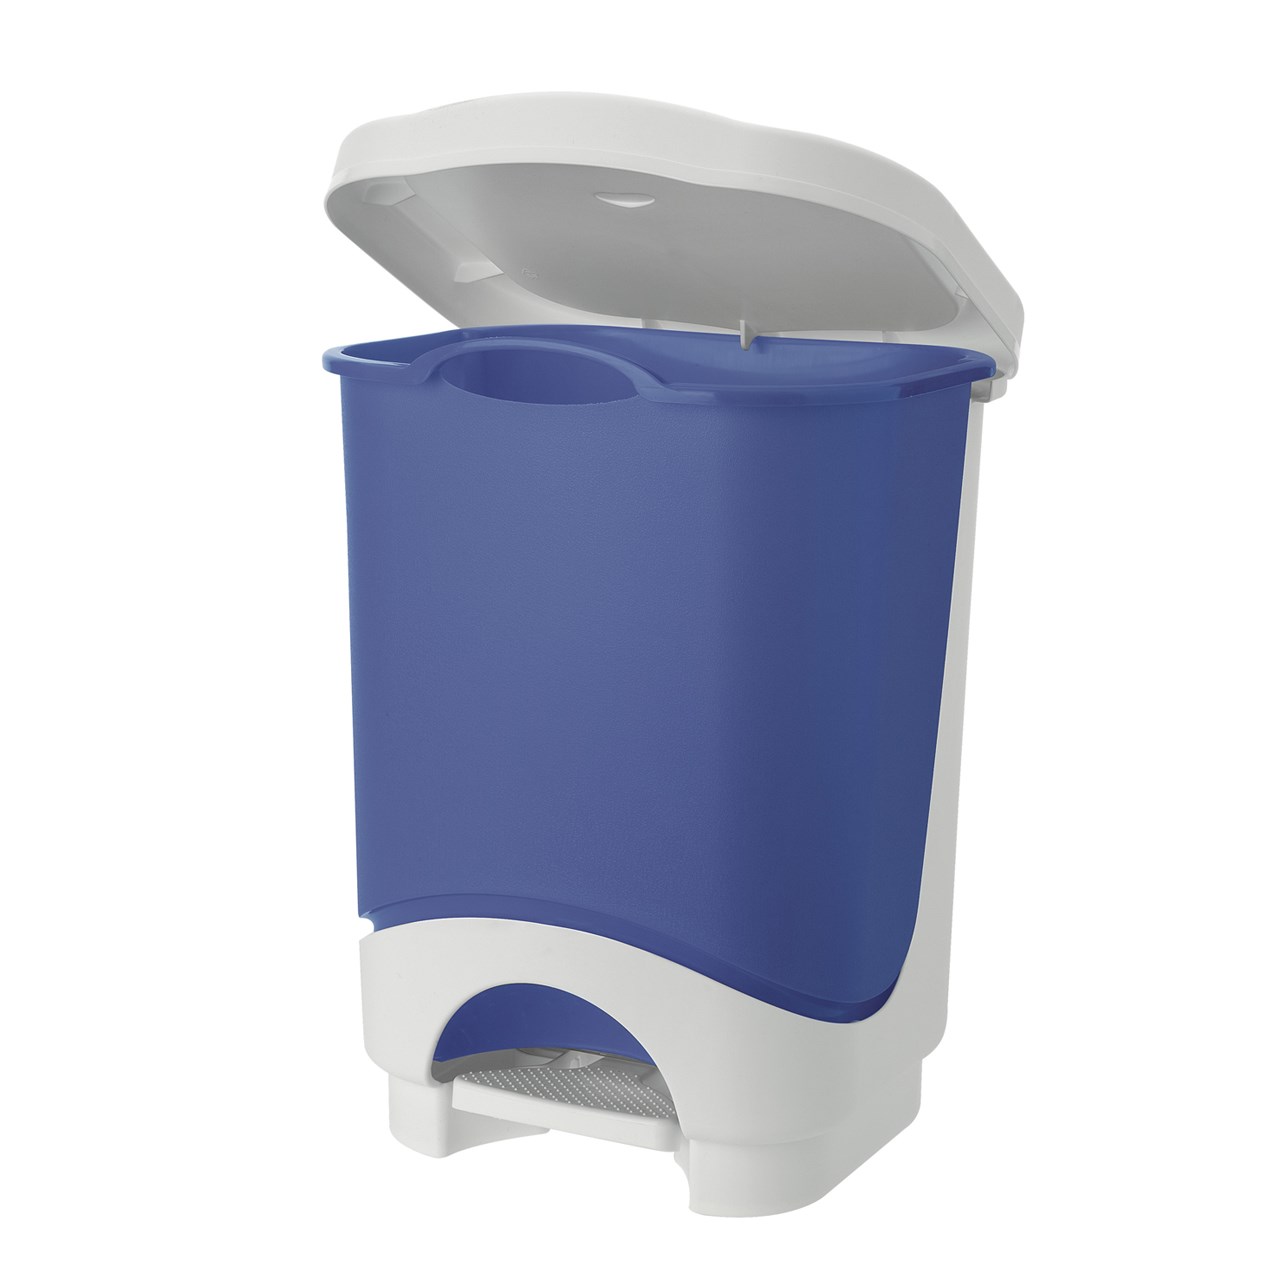 سطل زباله پدالی تنتارلی مدل Idea -گنجایش 18 لیتر